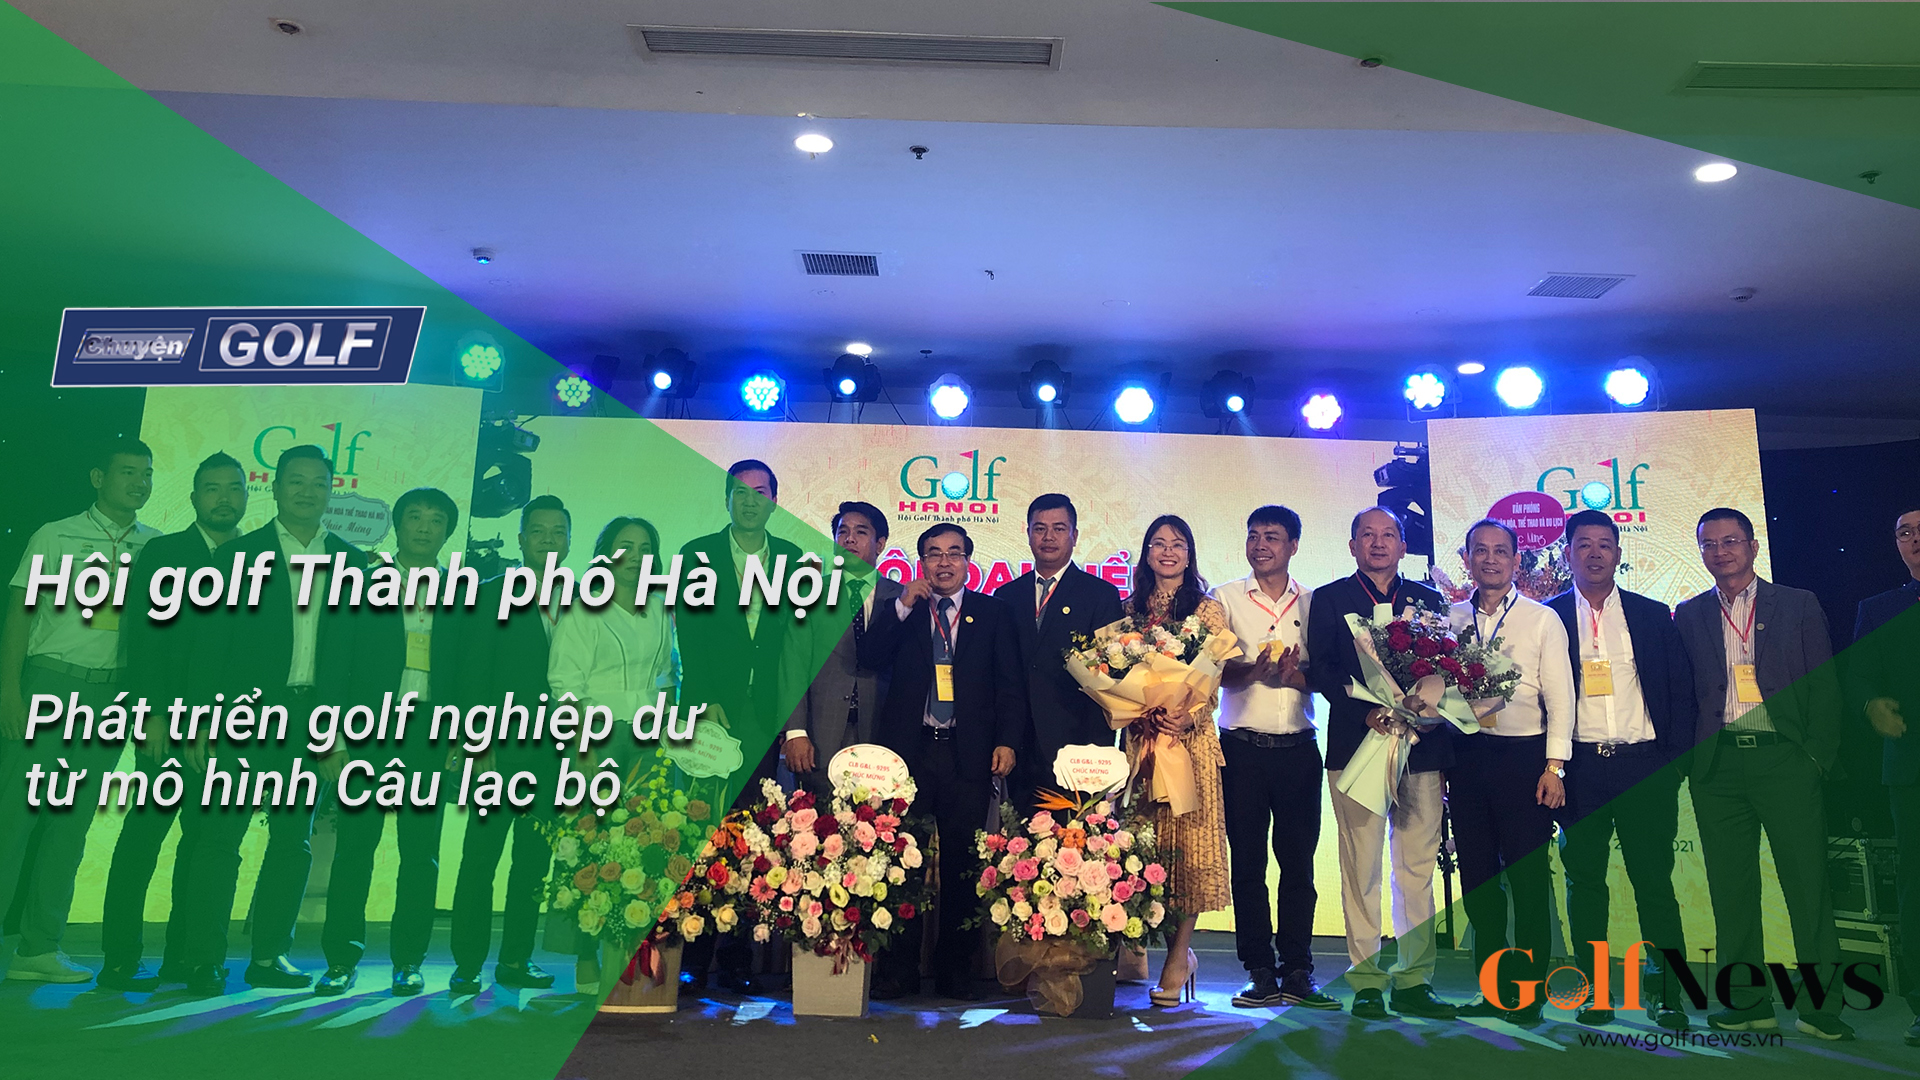 Hội golf Thành phố Hà Nội – Phát triển golf nghiệp dư từ mô hình Câu lạc bộ